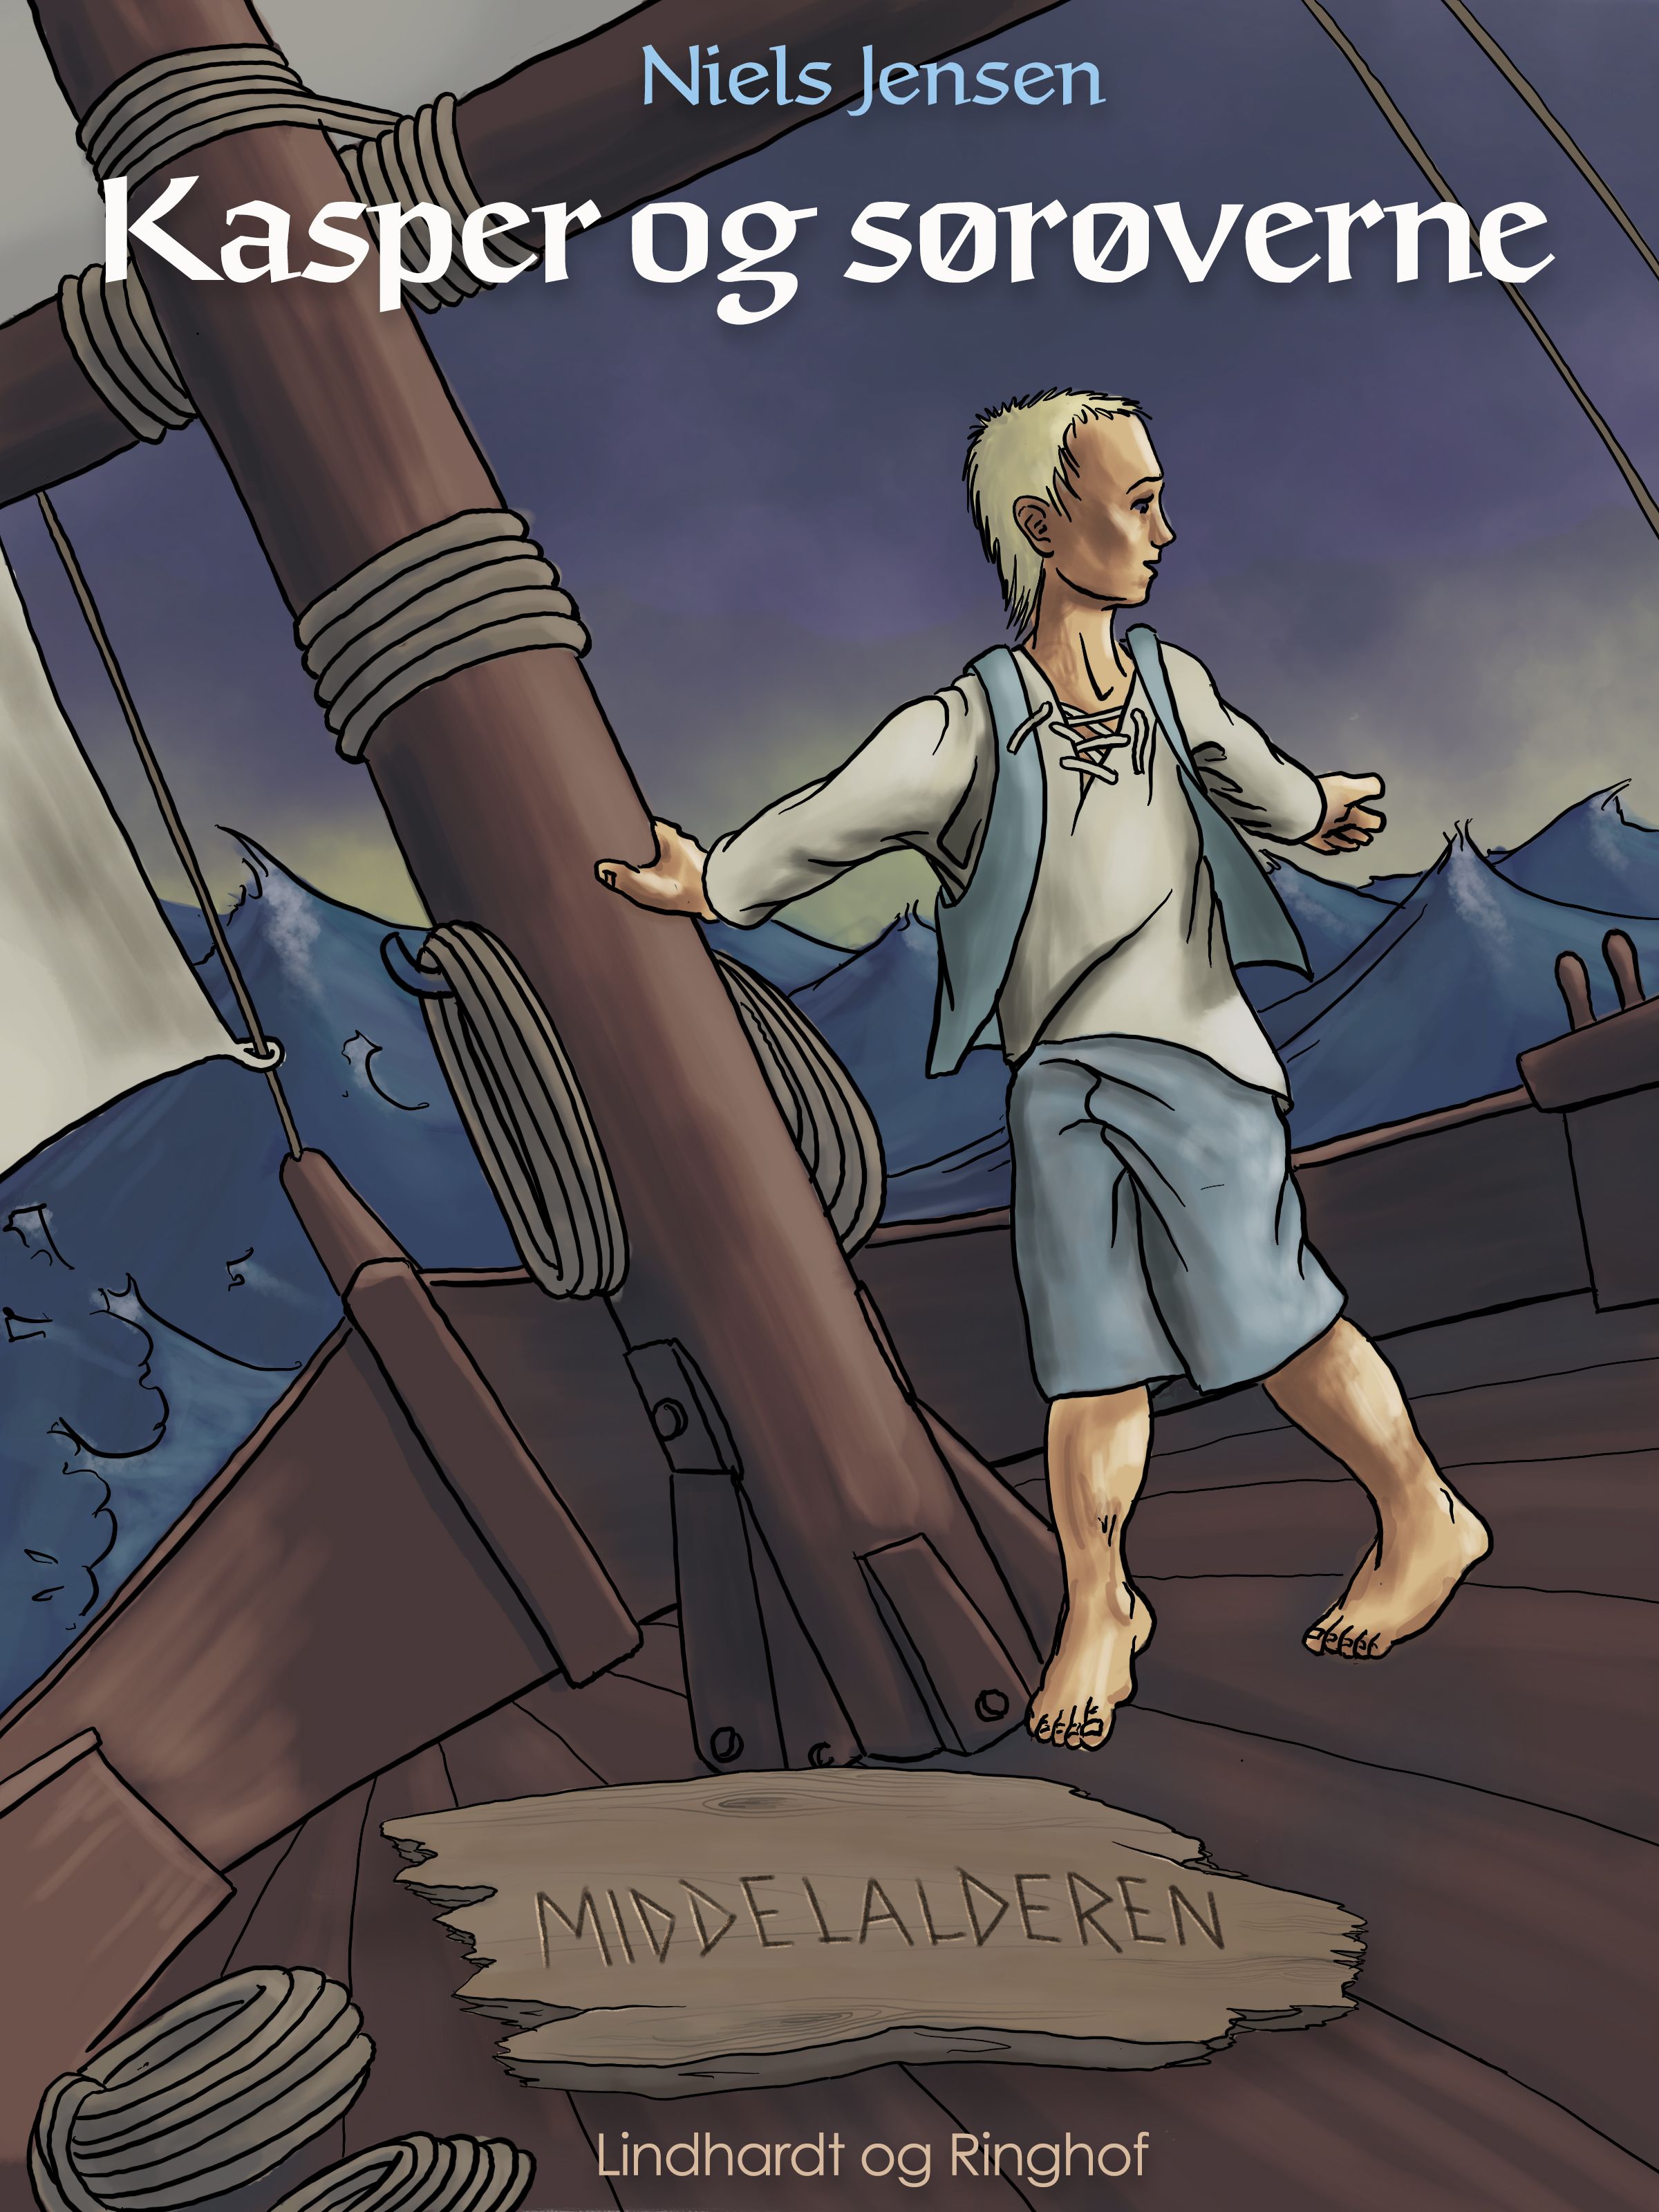 Middelalderen: Kasper og sørøverne, e-bog af Niels Jensen